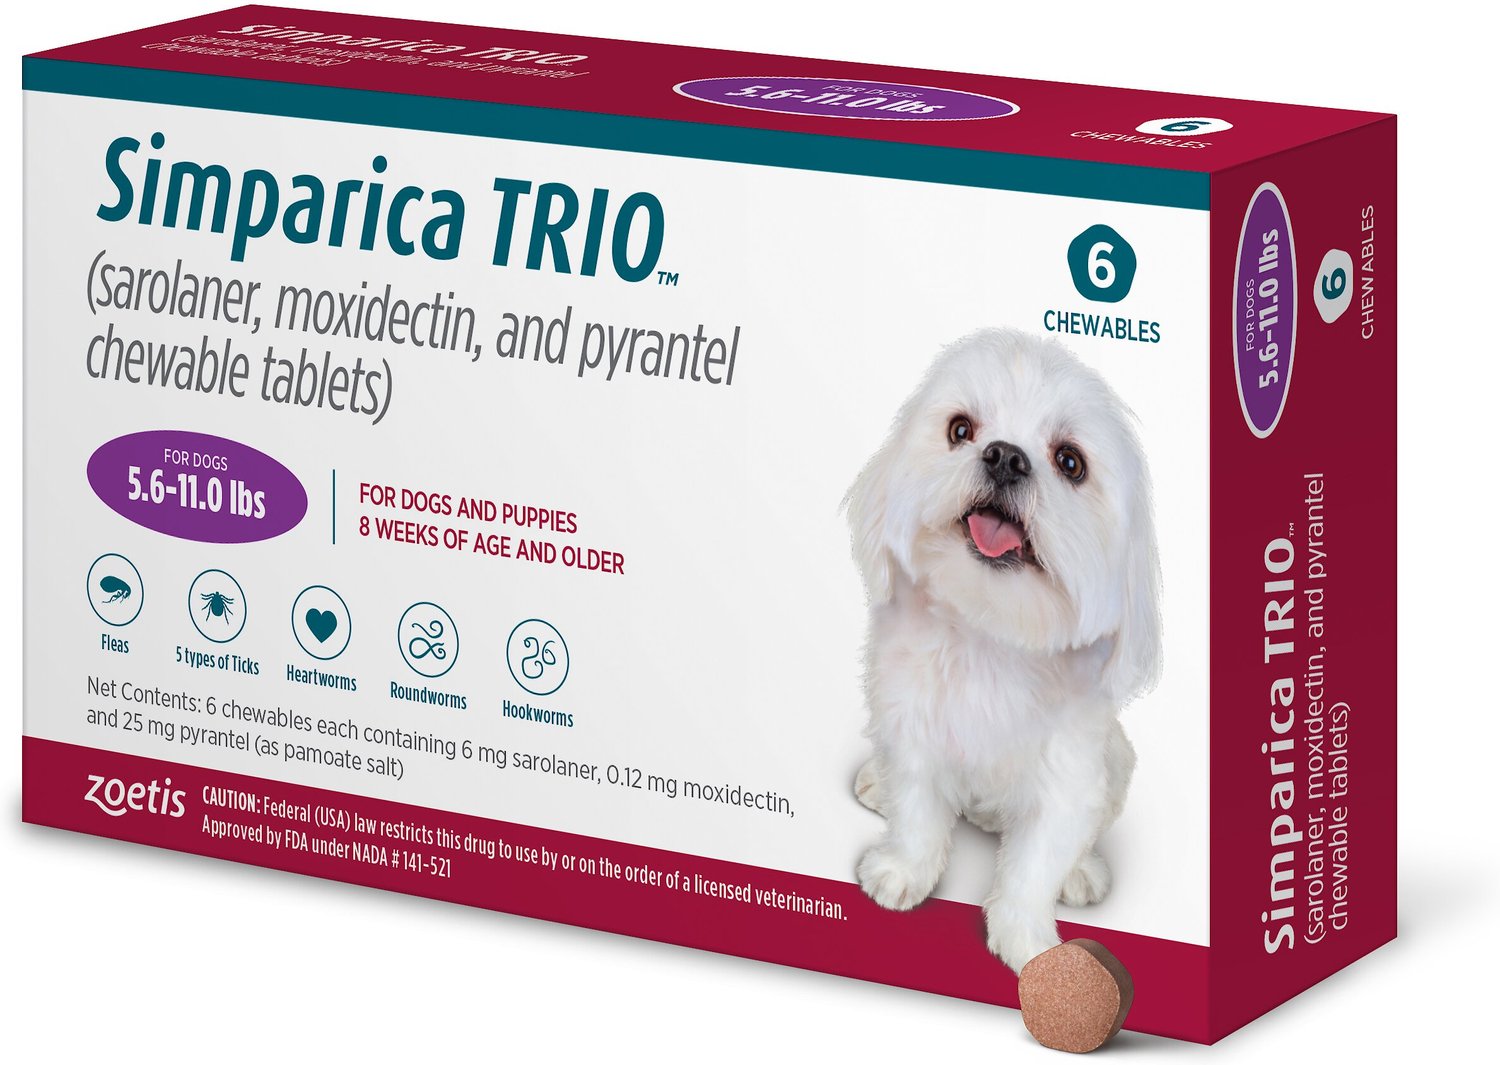 Simparica Trio Dogs Month Supply Petco Simparica Trio Sizes Chewable 